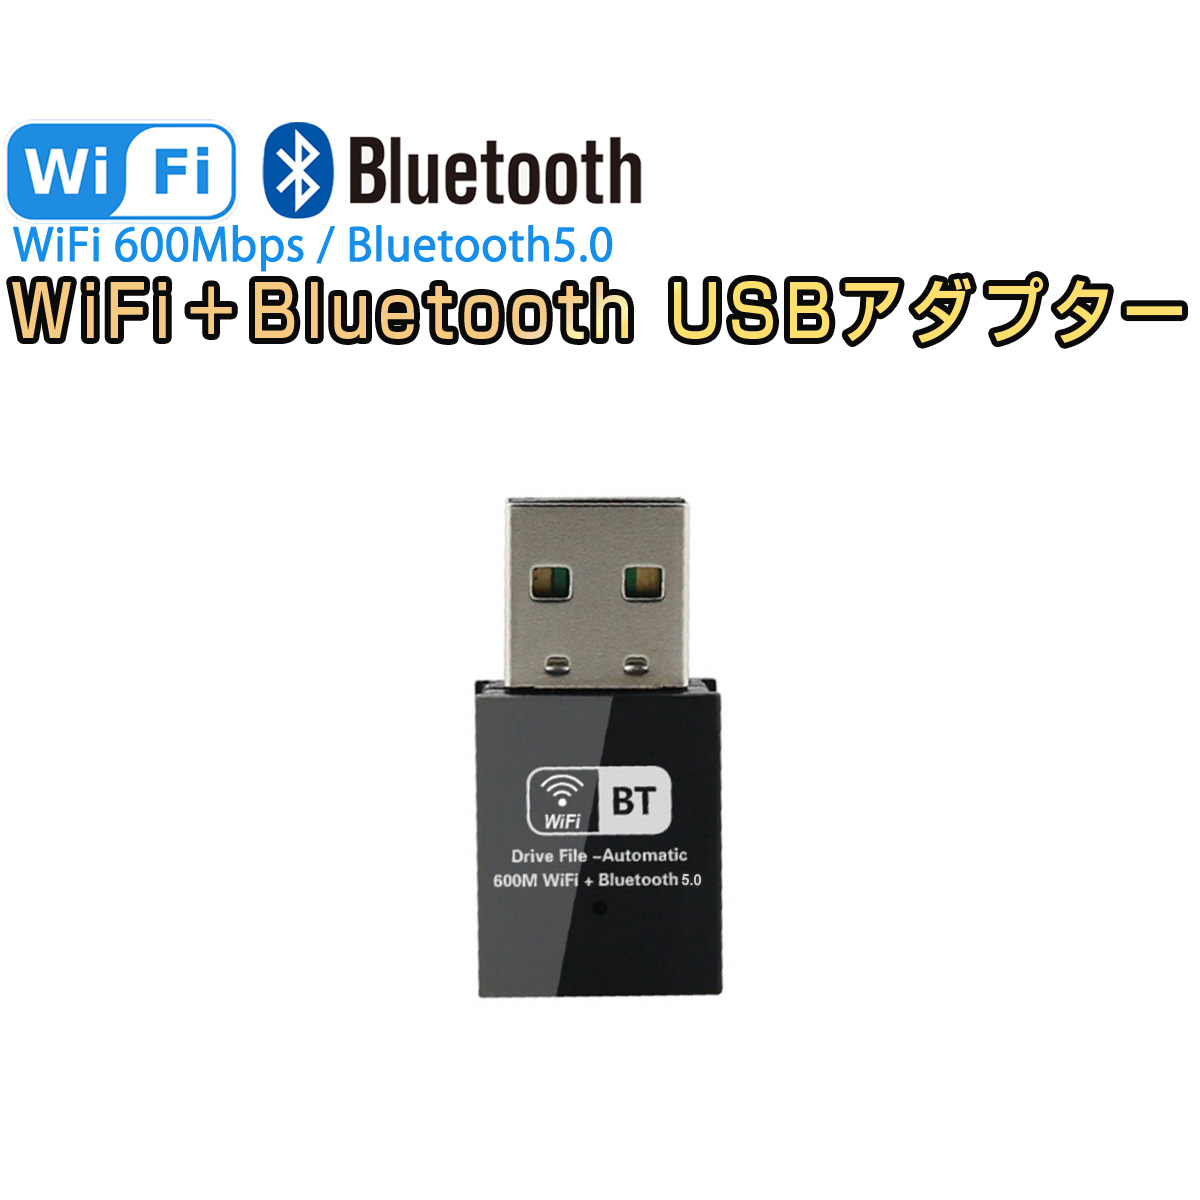 注文後の変更キャンセル返品 SDL 2022最新モデル usb wifi Bluetooth アダプター 日本最級 子機 親機 無線lan Wi-Fiレシーバー デュアルバンド 2.4GHz Linux対応 Windows 433Mbps対応 150Mbps 5GHz Mac 5.0 ブルートゥース OS X 1ヶ月保証